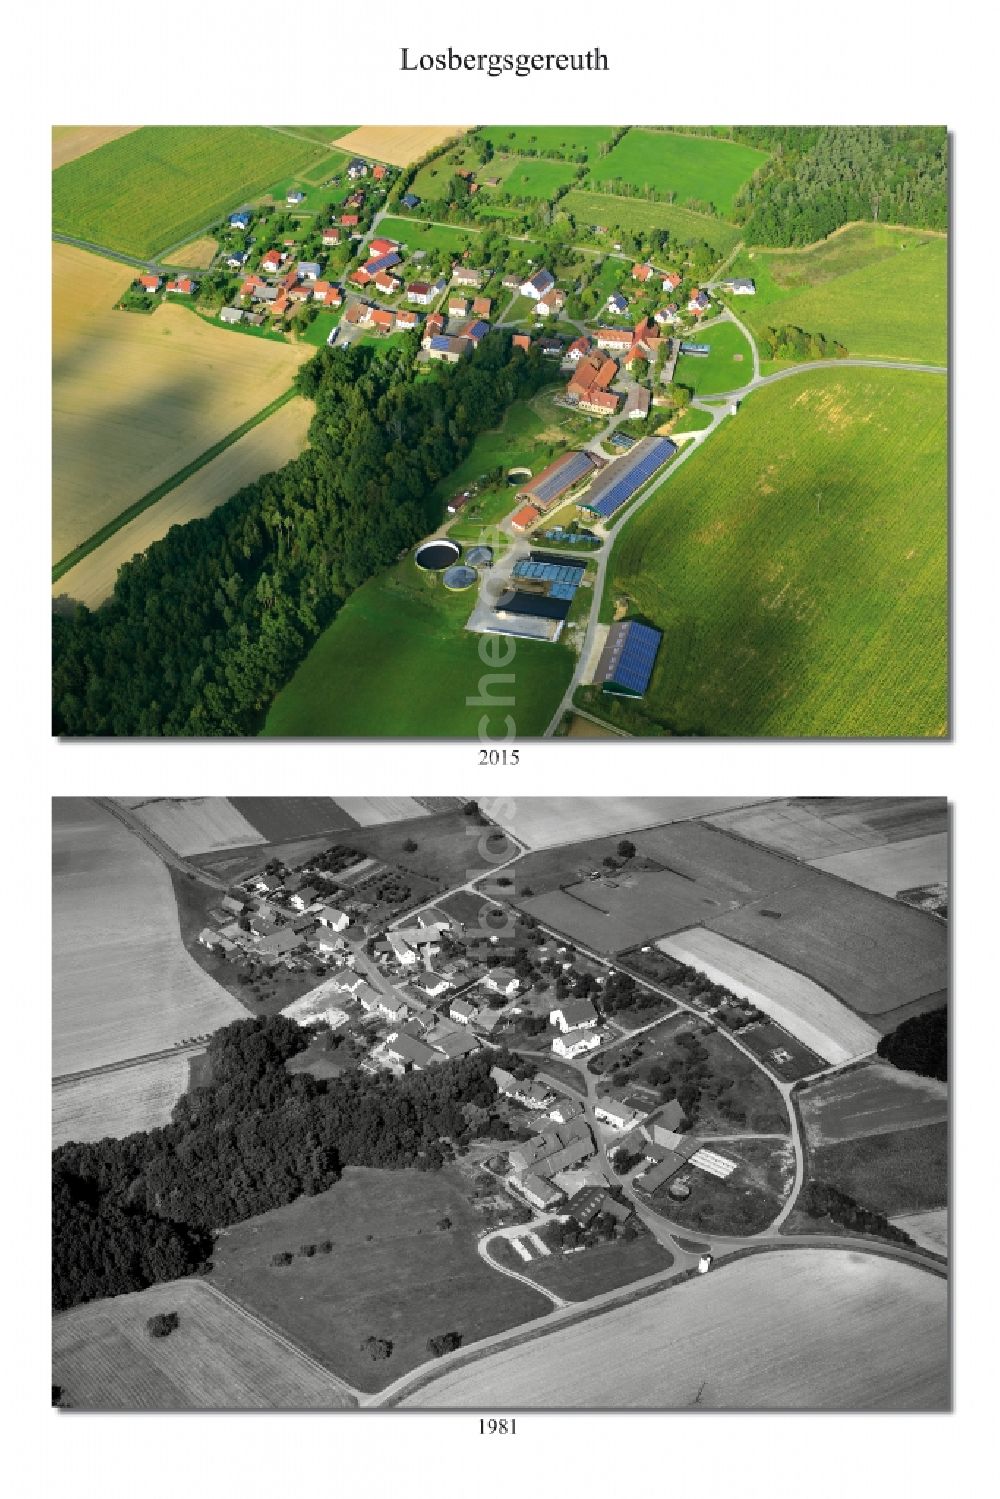 Luftbild Losbergsgereuth - 1981 und 2015 Wandel der Dorf - Ansicht von Losbergsgereuth im Landkreis Haßberge im Bundesland Bayern